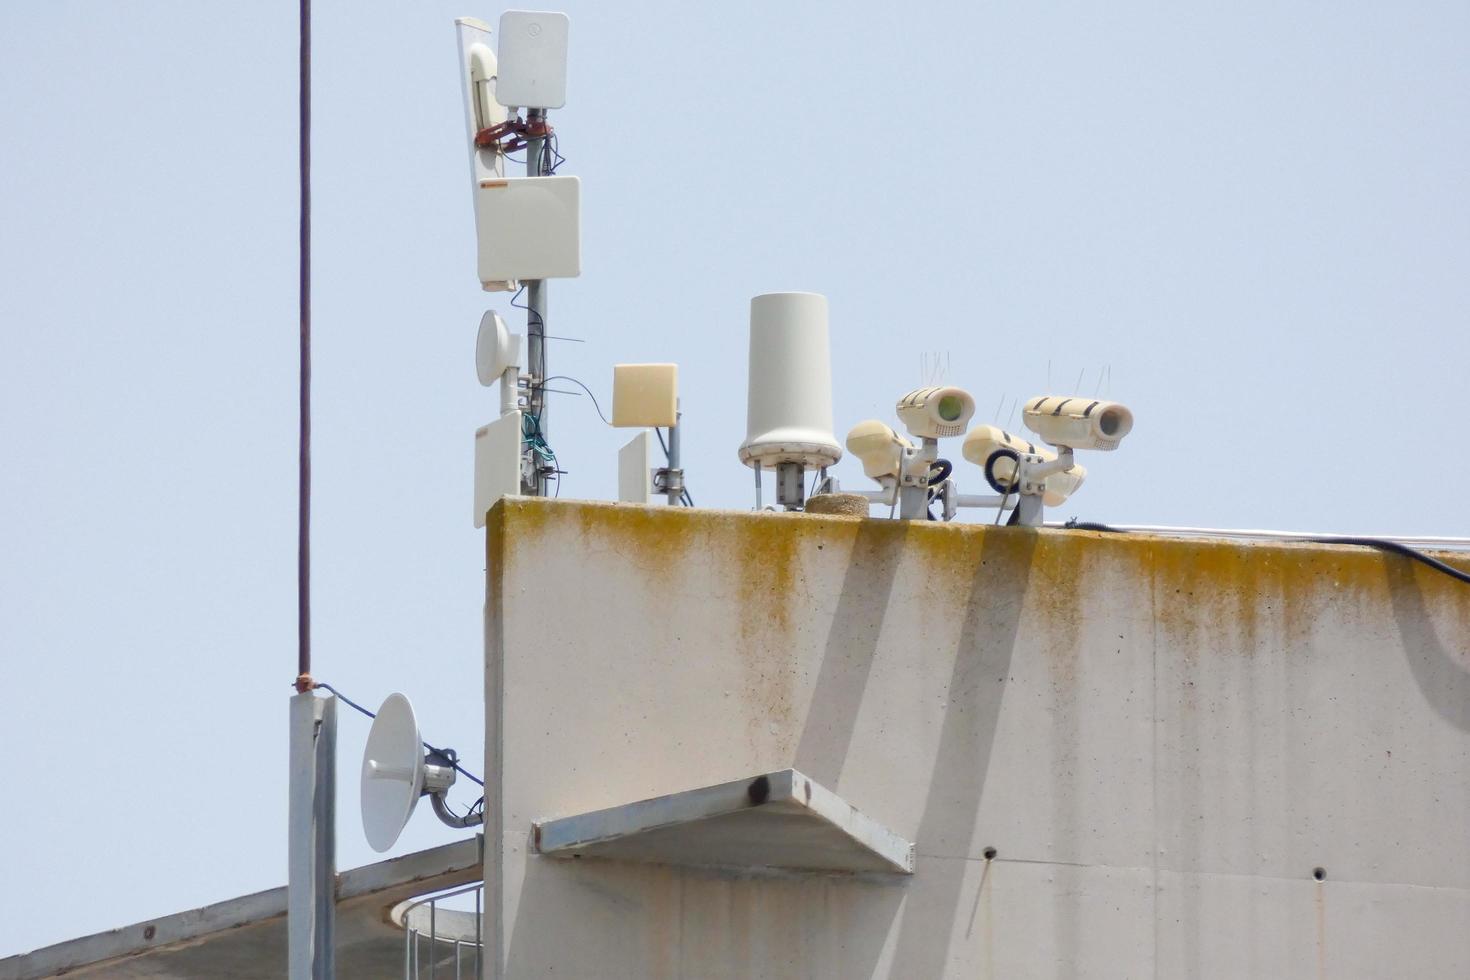 cámaras de seguridad y antenas telefónicas y de radio foto